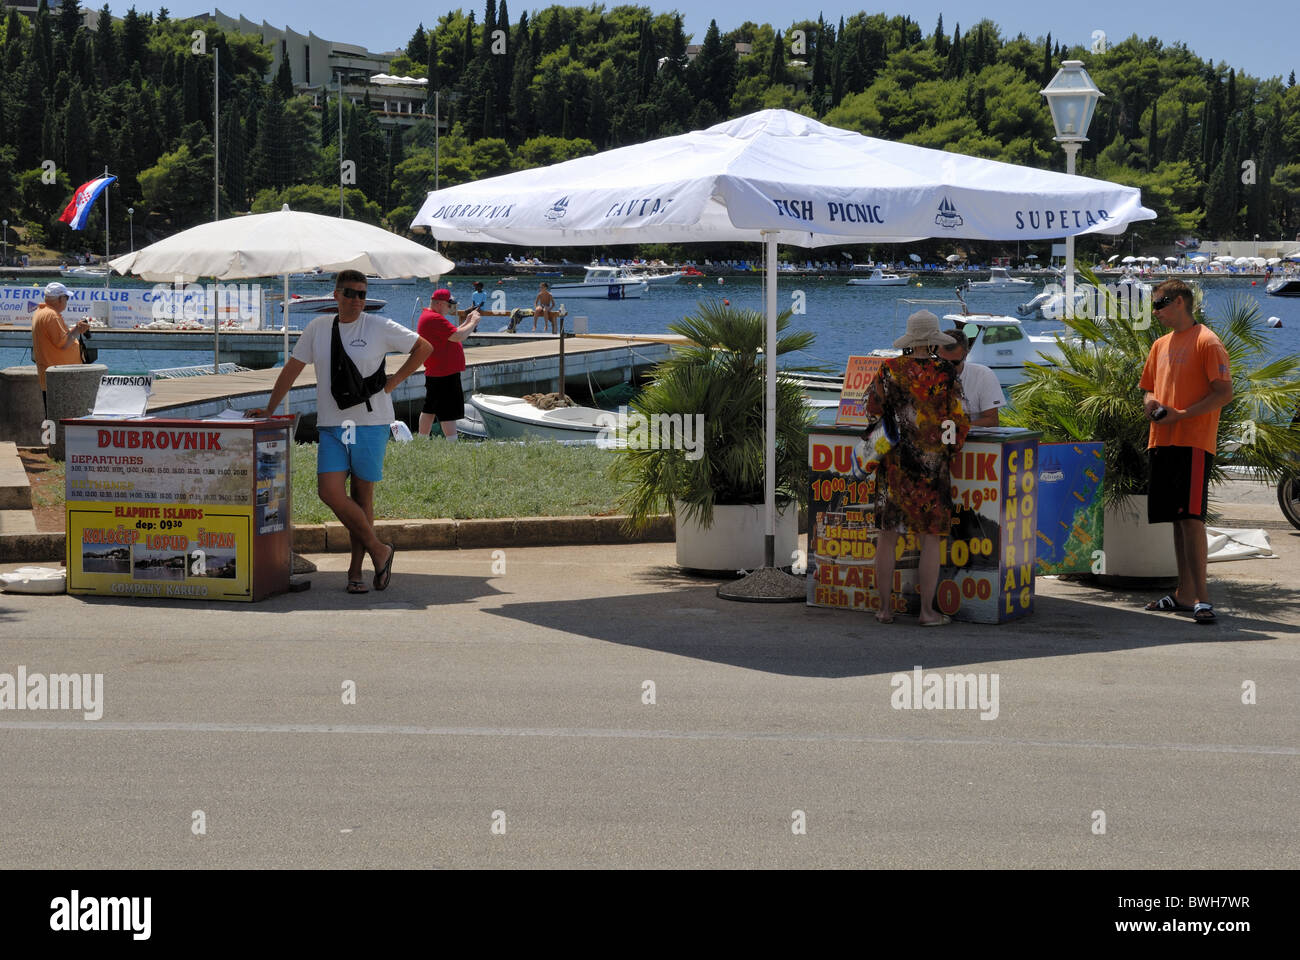 Die Reisebüros verkaufen Schiffskarten nach Dubrovnik, Ausflug nach Elafiti Insel und "eines Tages drei Insel & Fisch Picknick Touren"... Stockfoto